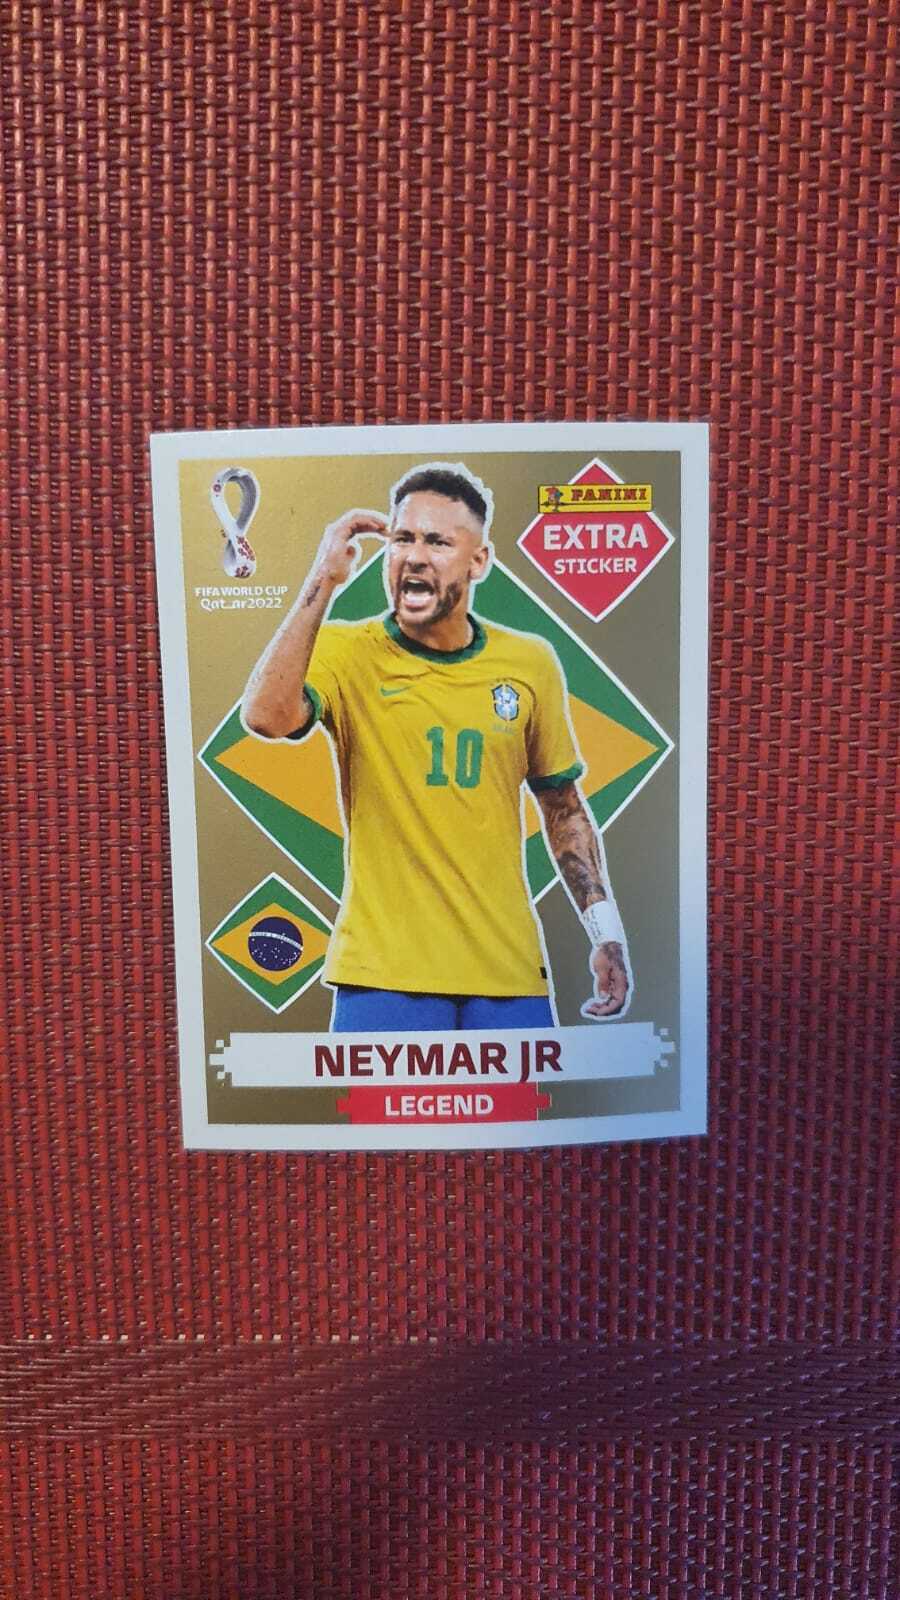 Neymar (World Soccer Legends #8) (Hardcover)